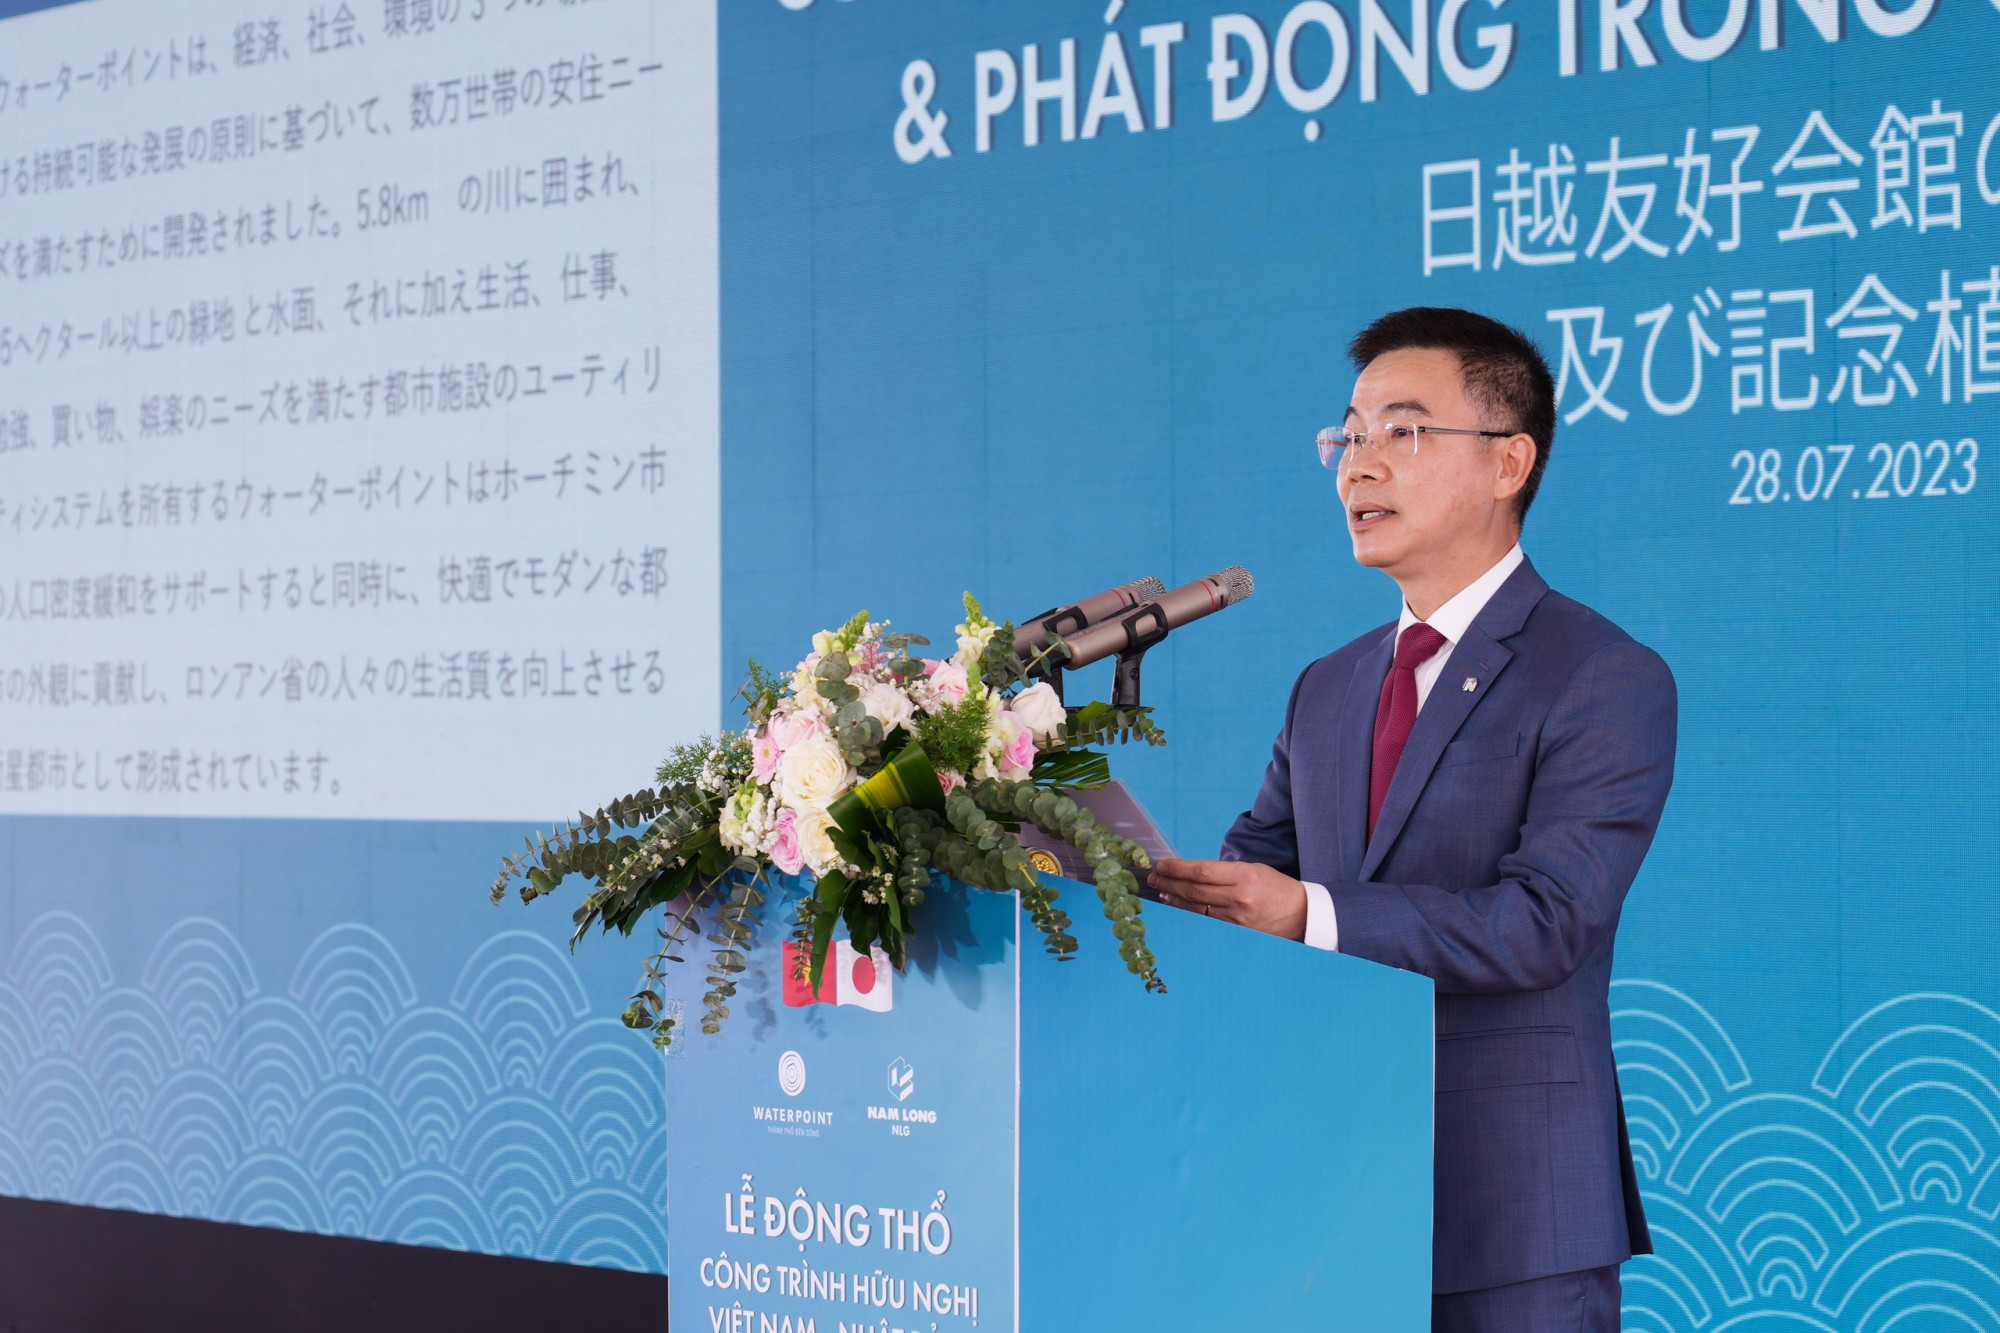 Ông Trần Xuân Ngọc - Tổng giám đốc Nam Long Group phát biểu tại sự kiện